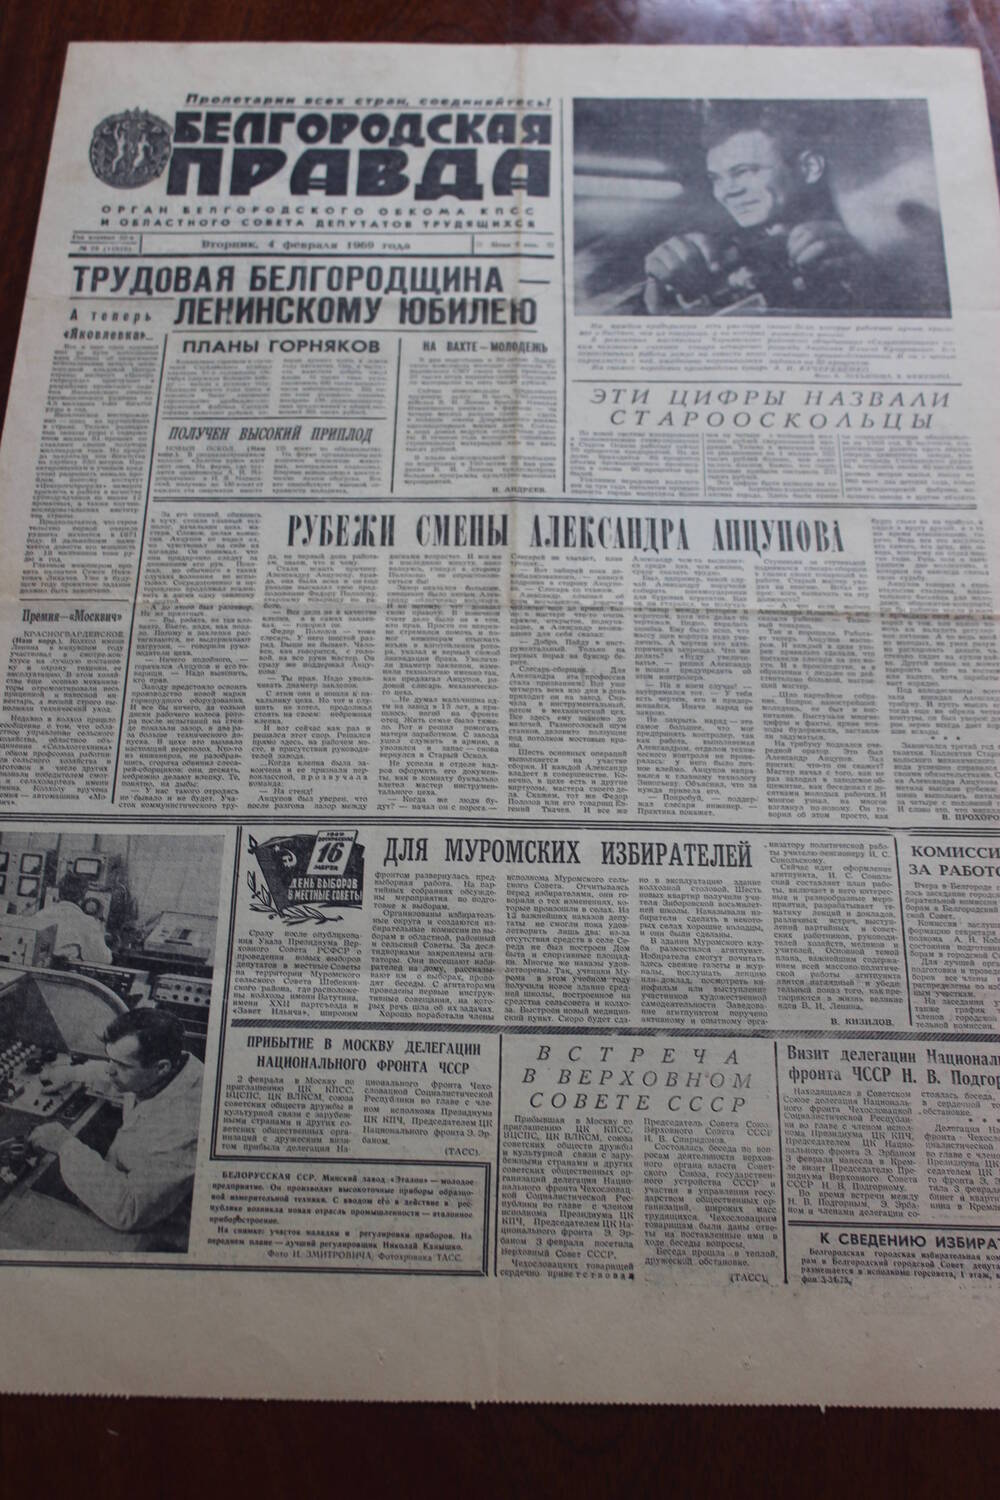 Газета.
Белгородская правда № 29 (11810) от 4 февраля 1969 г.